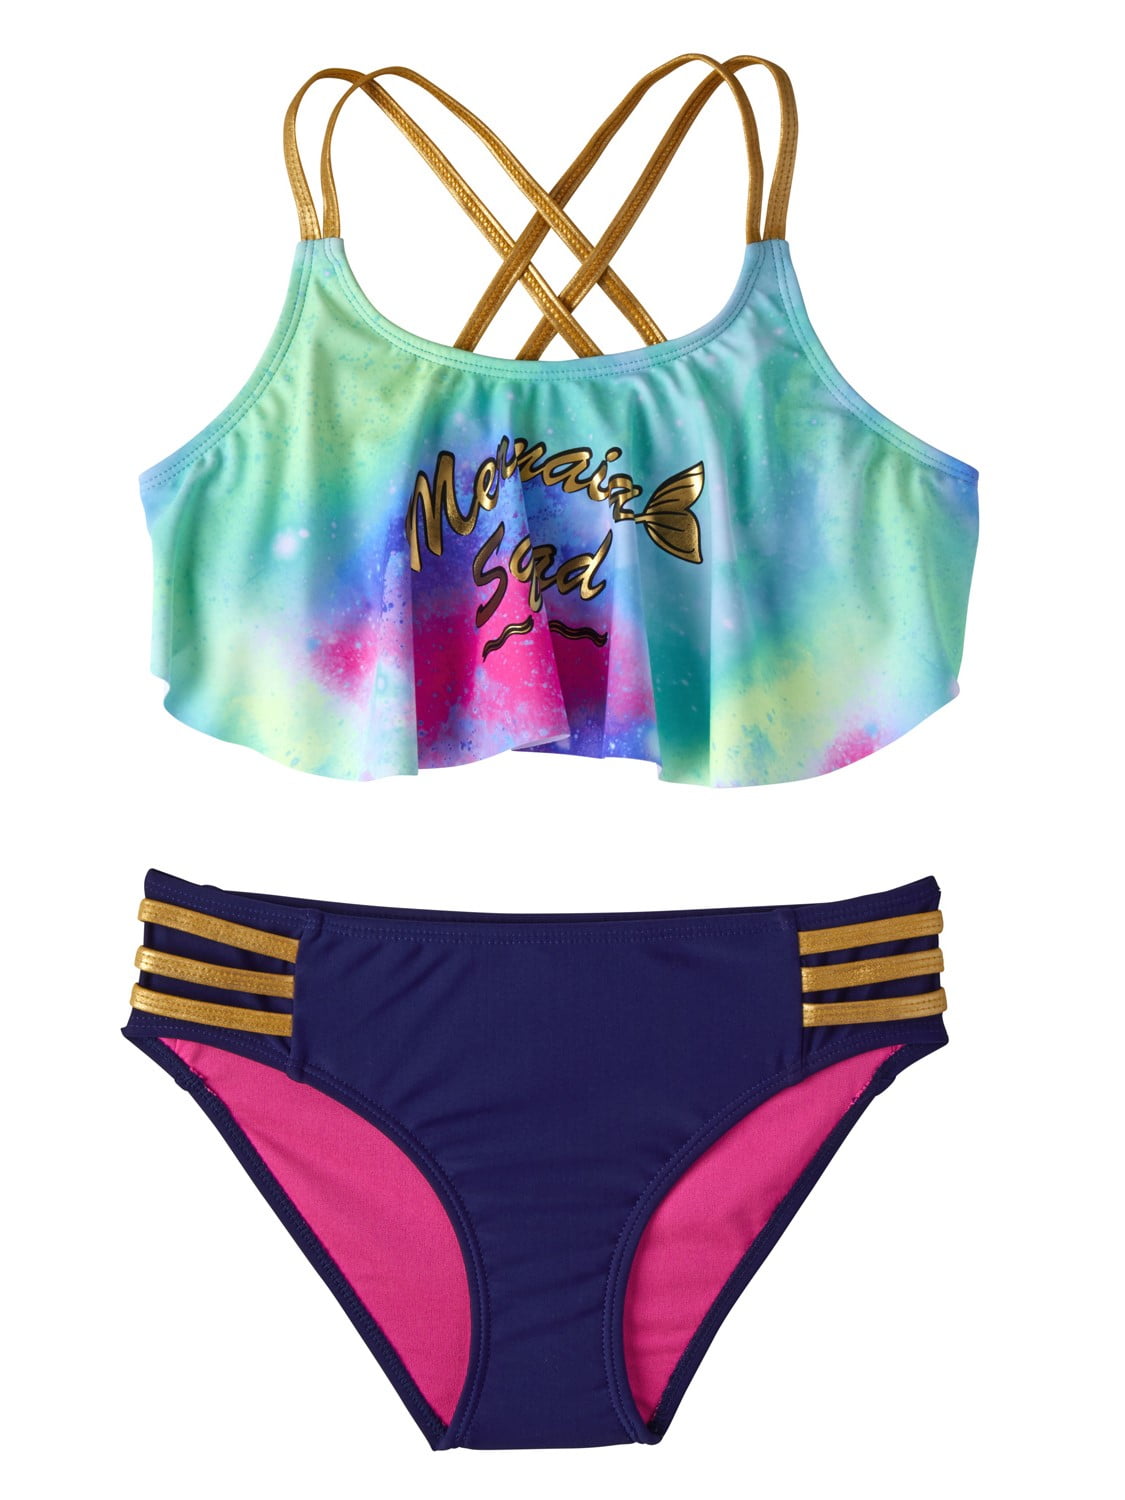 Foil Mermaid Squad Tie-Dye Tankini Swimsuit (Little Girls) - Walmart.com